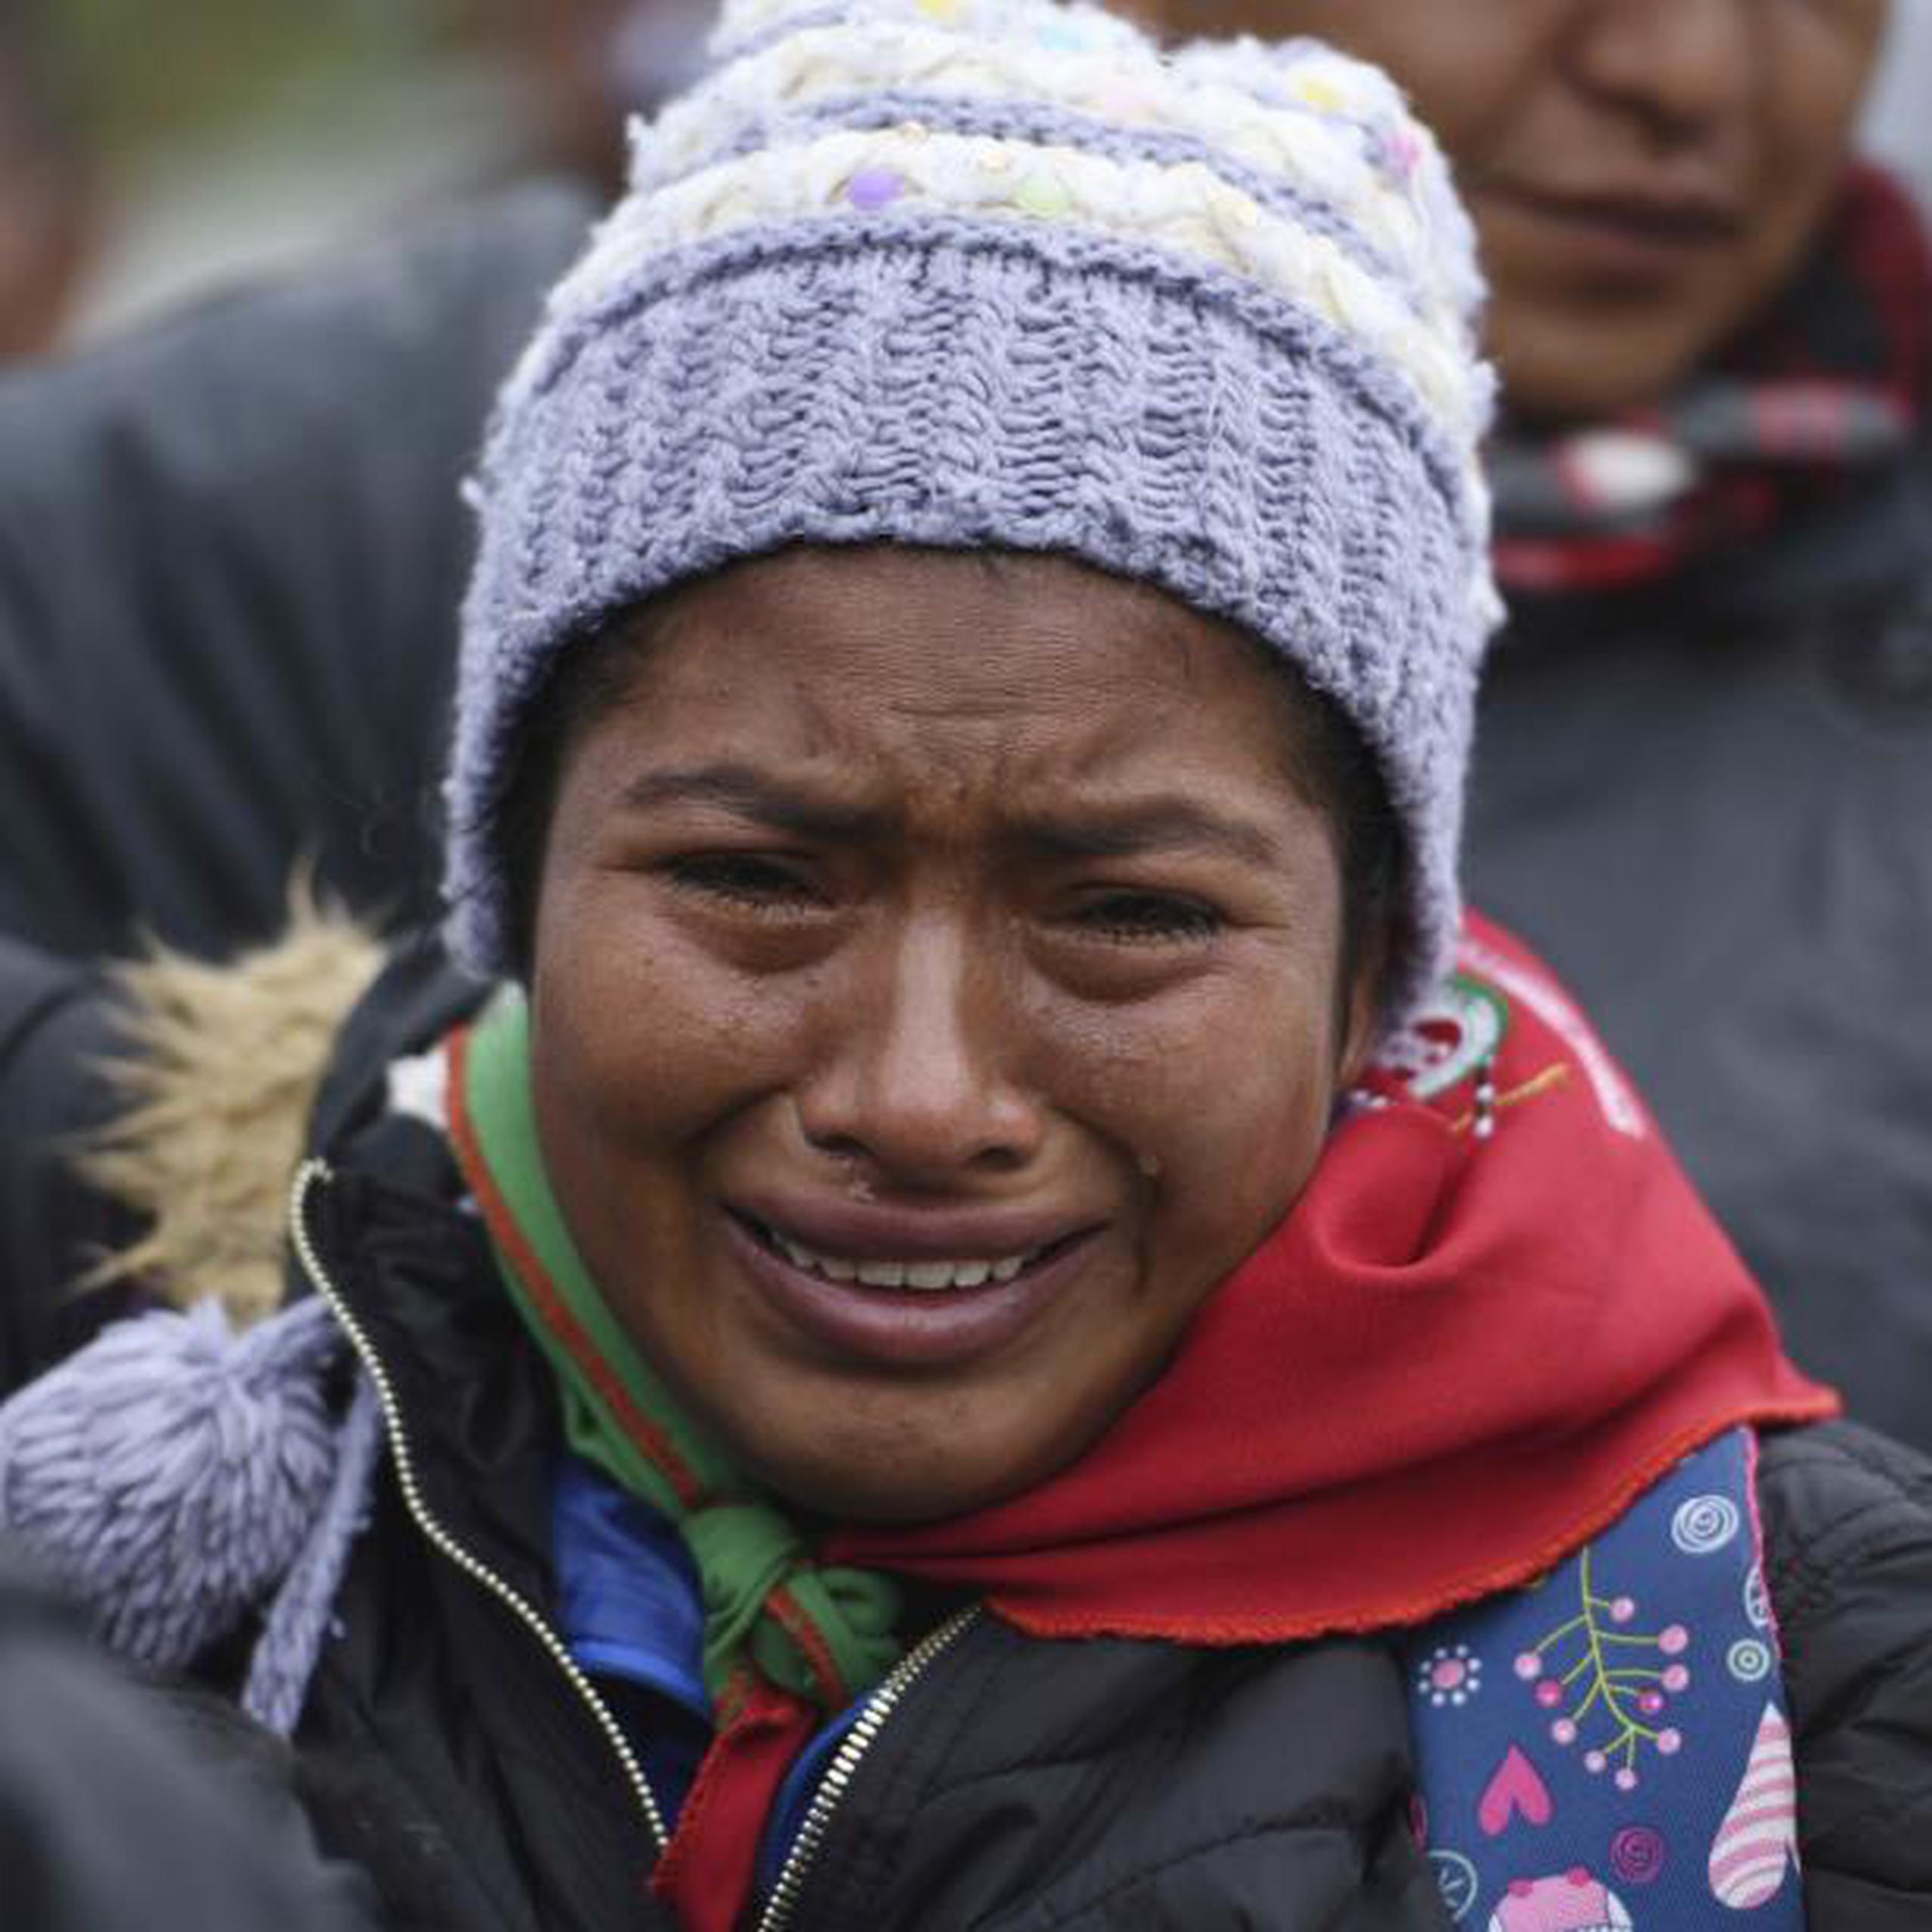 Según la Organización Nacional Indígena, en Colombia han sido asesinados más de 115 indígenas en diferentes partes del país en los últimos años. (AP)